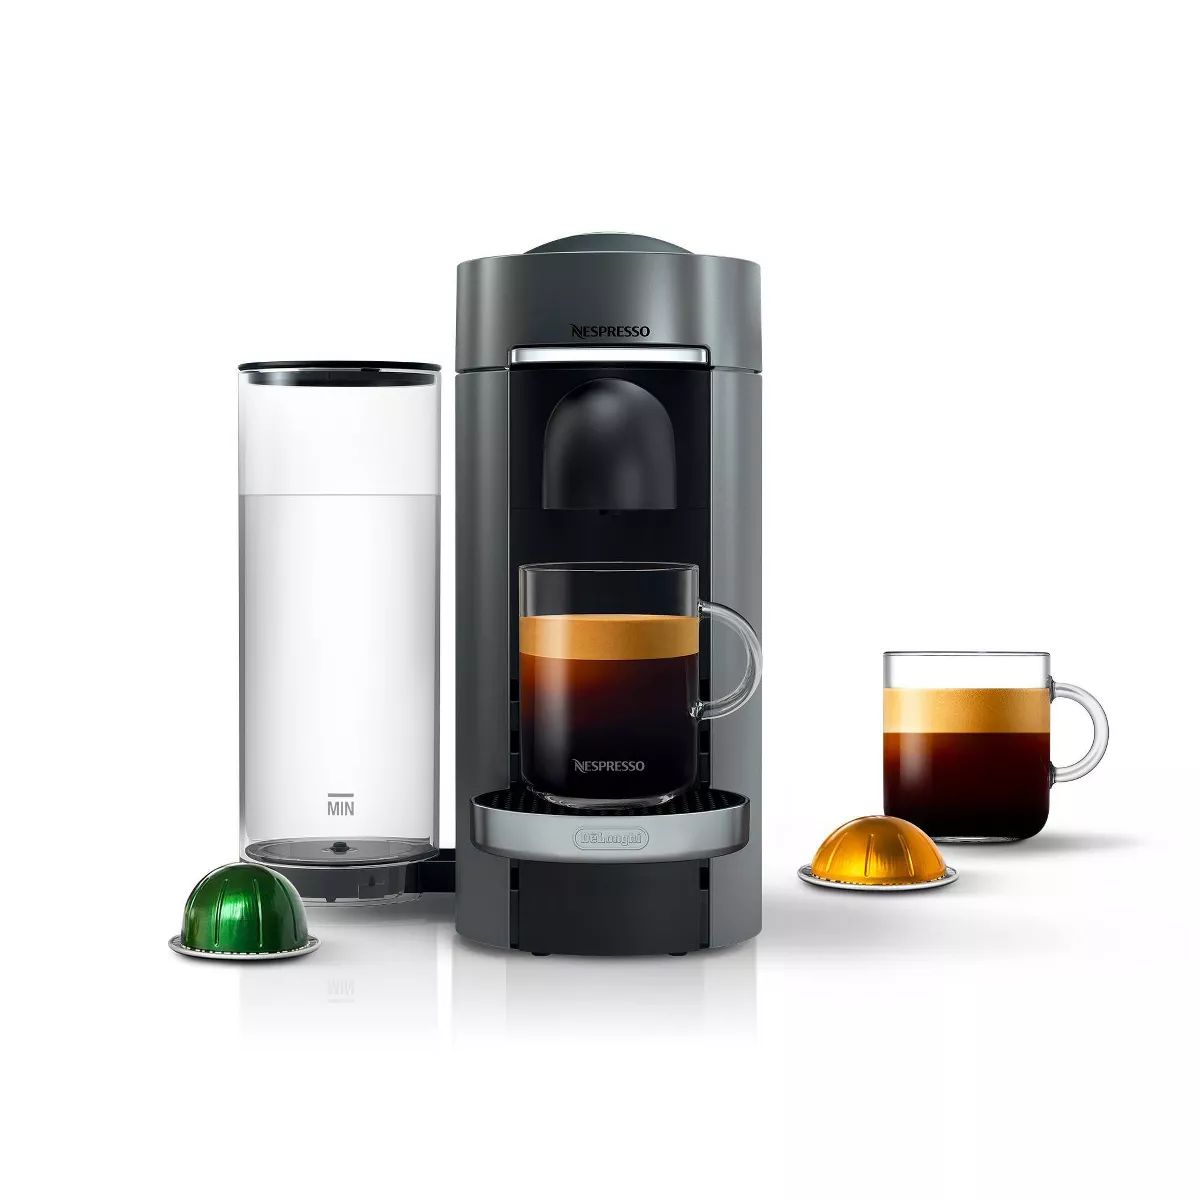 Nespresso Vertuo Plus Deluxe Coffee Maker and Espresso Machine by DeLonghi - Titan | Target